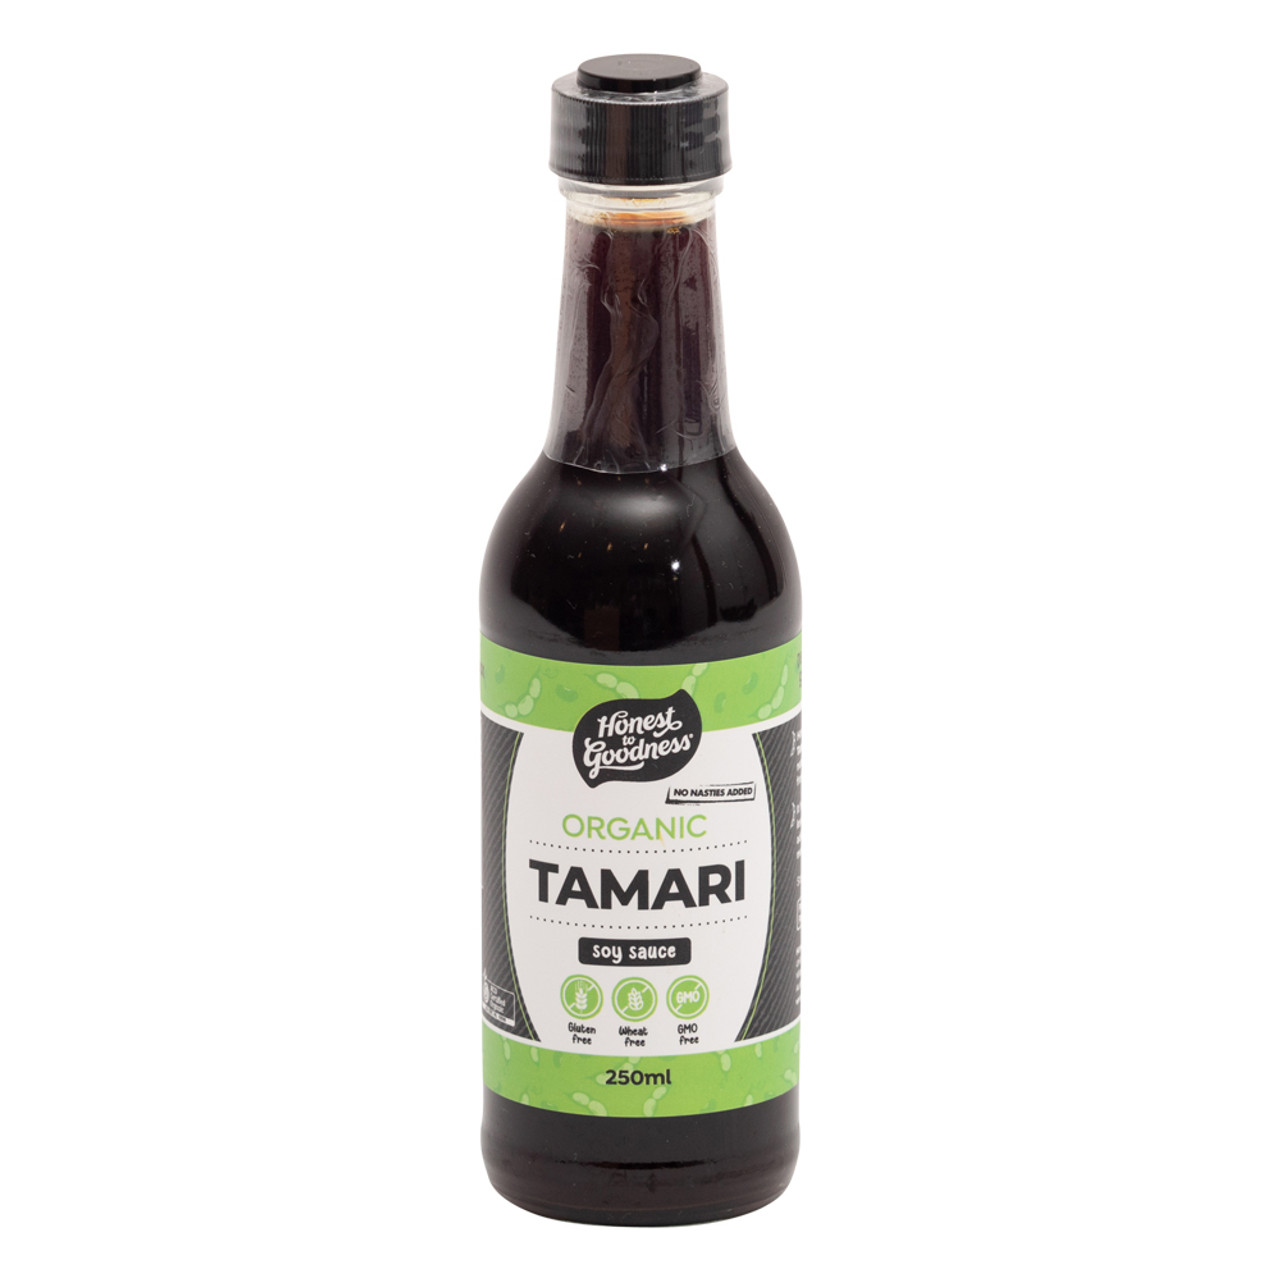 Organic Tamari Soy Sauce - 250ml – Ceres Organics